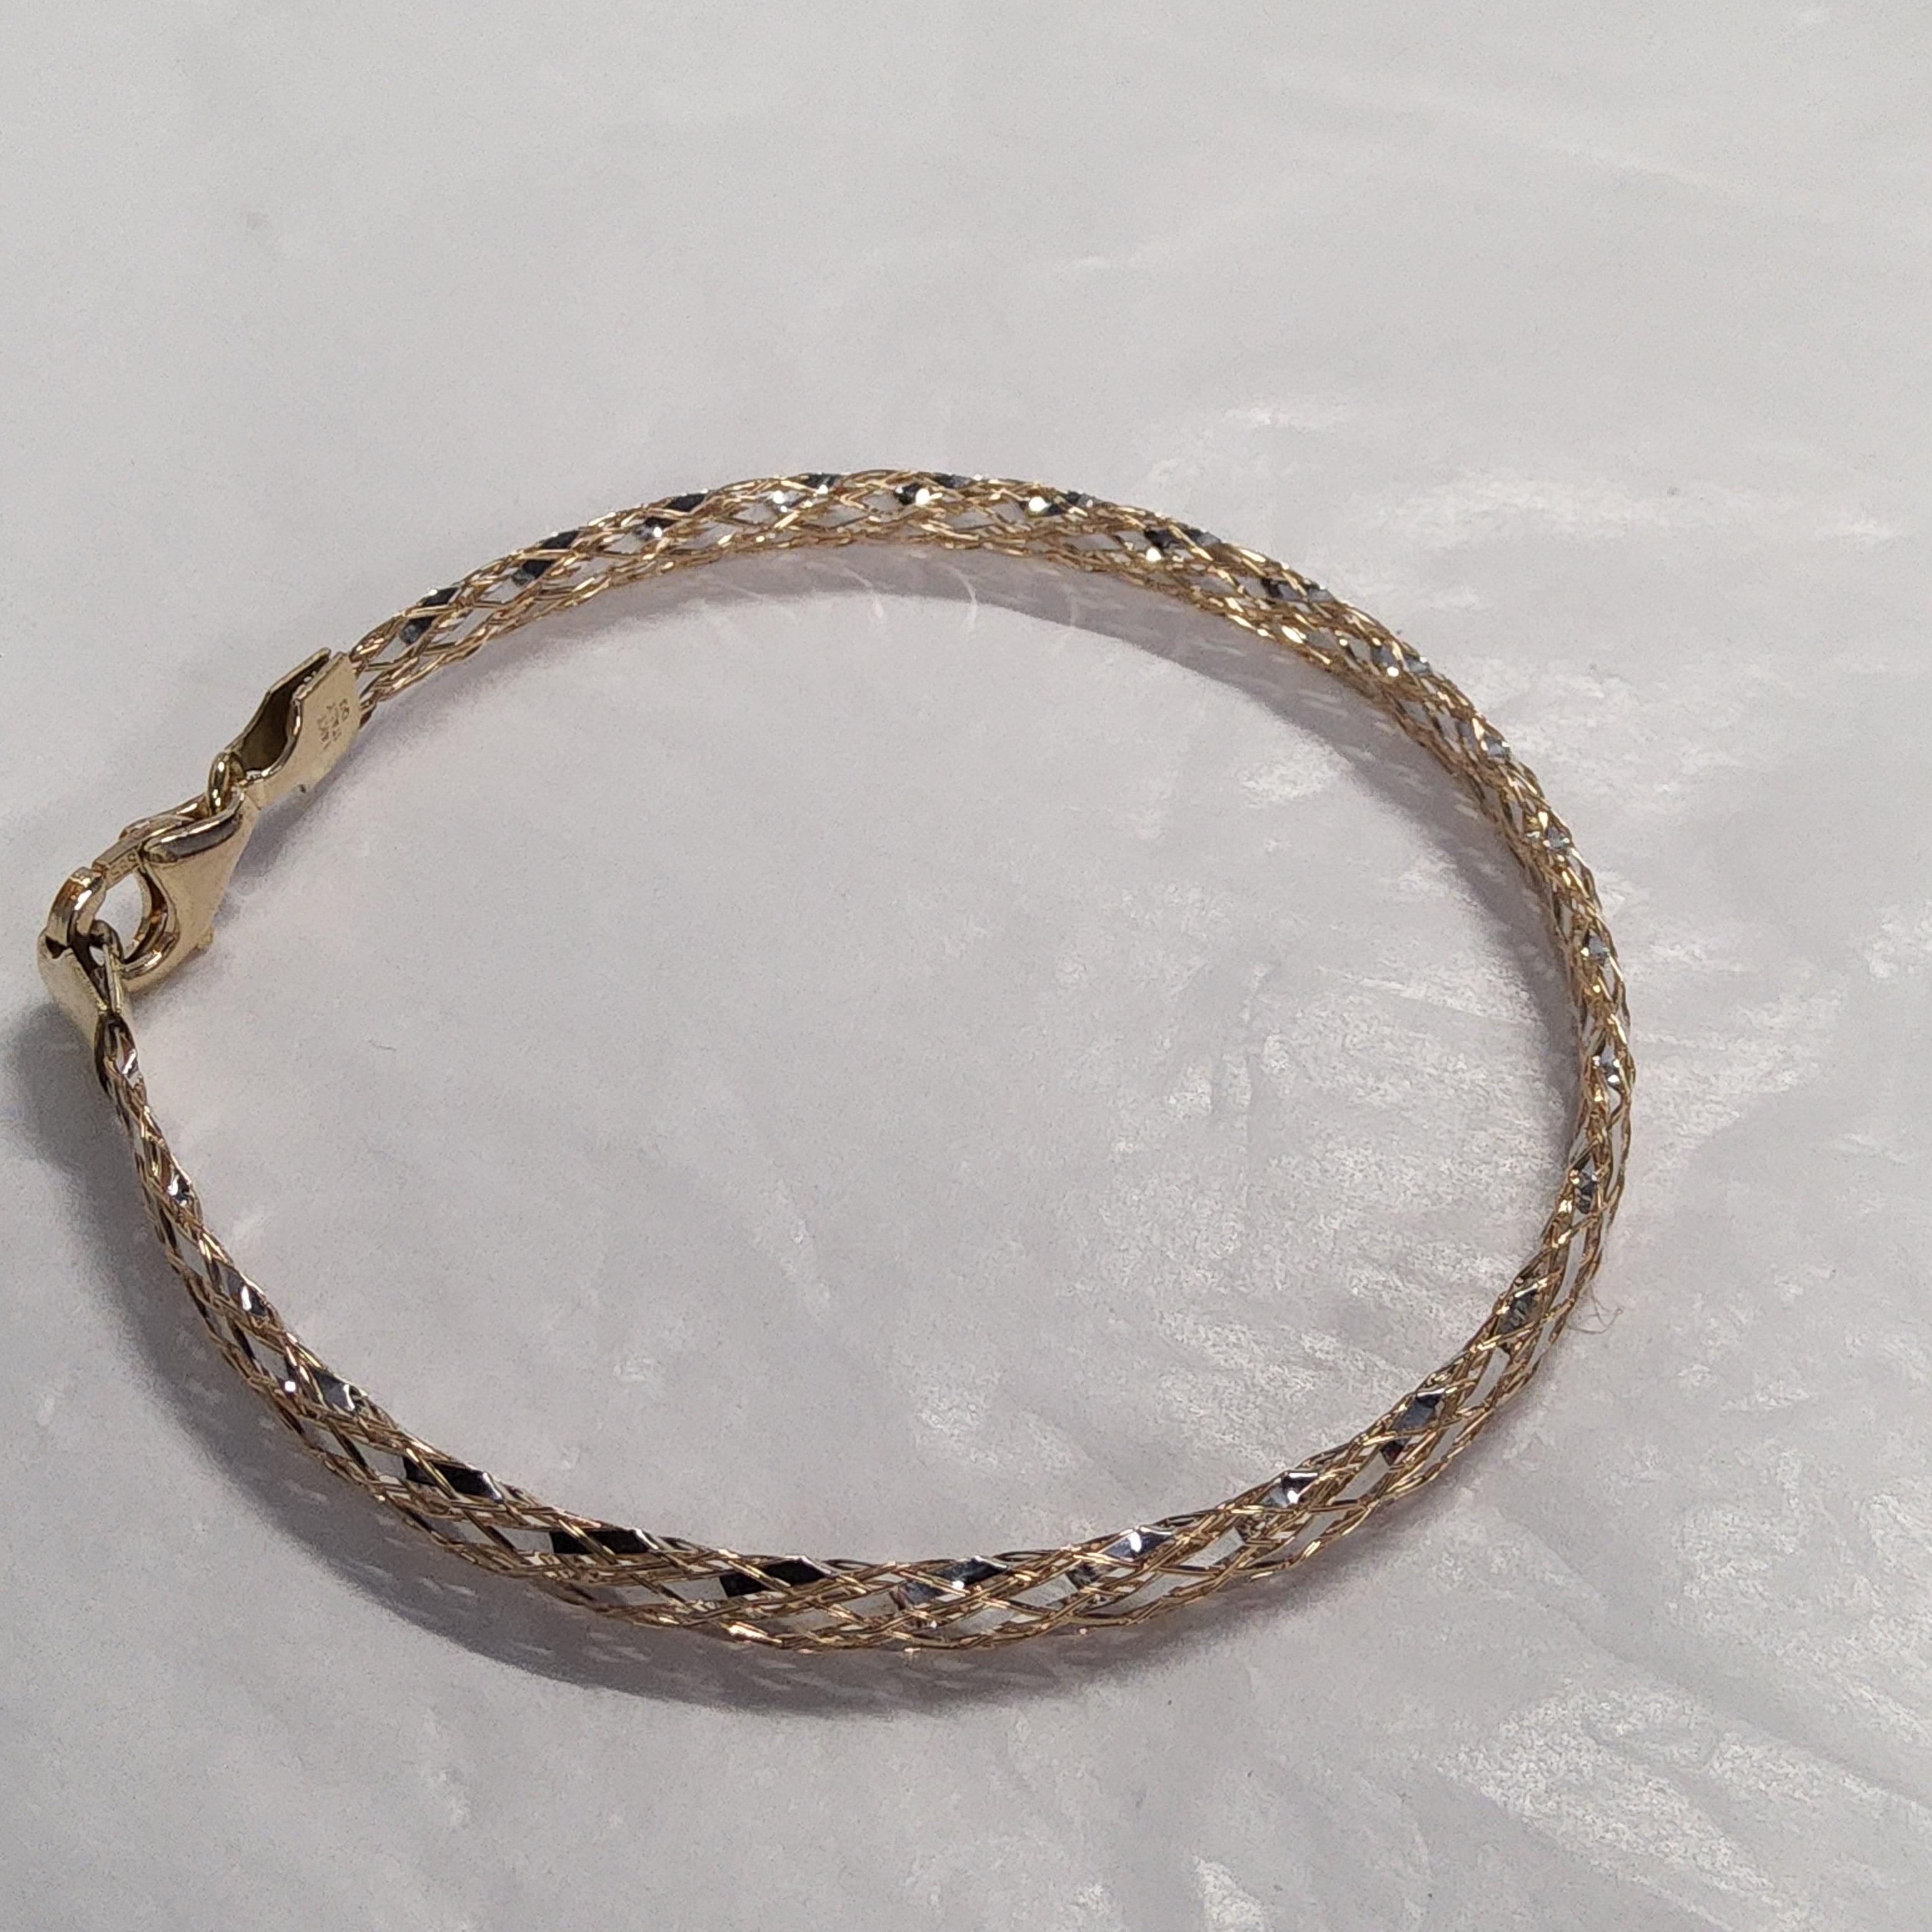 Two-Tone Gold Fancy Link Bracelet - 7.5 inch